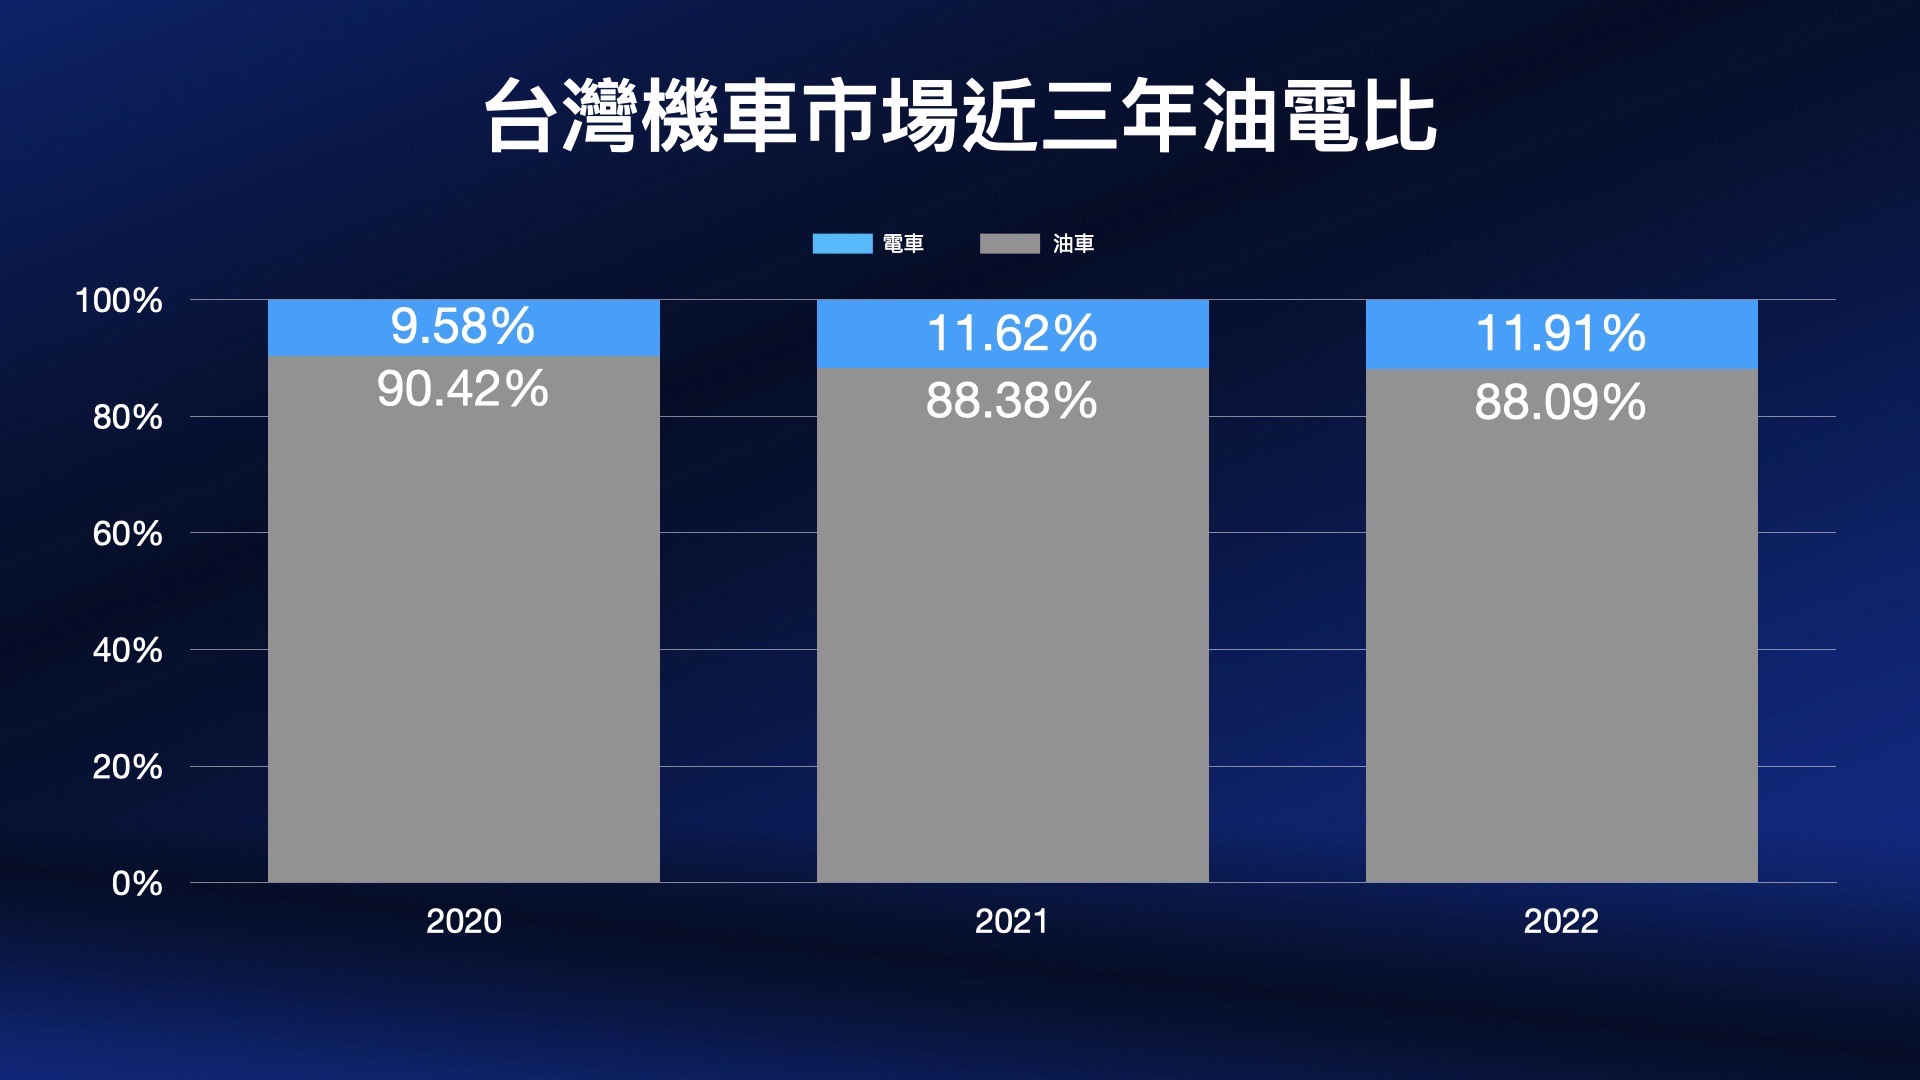 5. 台灣機車市場近三年銷售趨勢逐漸往電車靠攏，Ionex 光陽電動車在過去兩年內火力全開